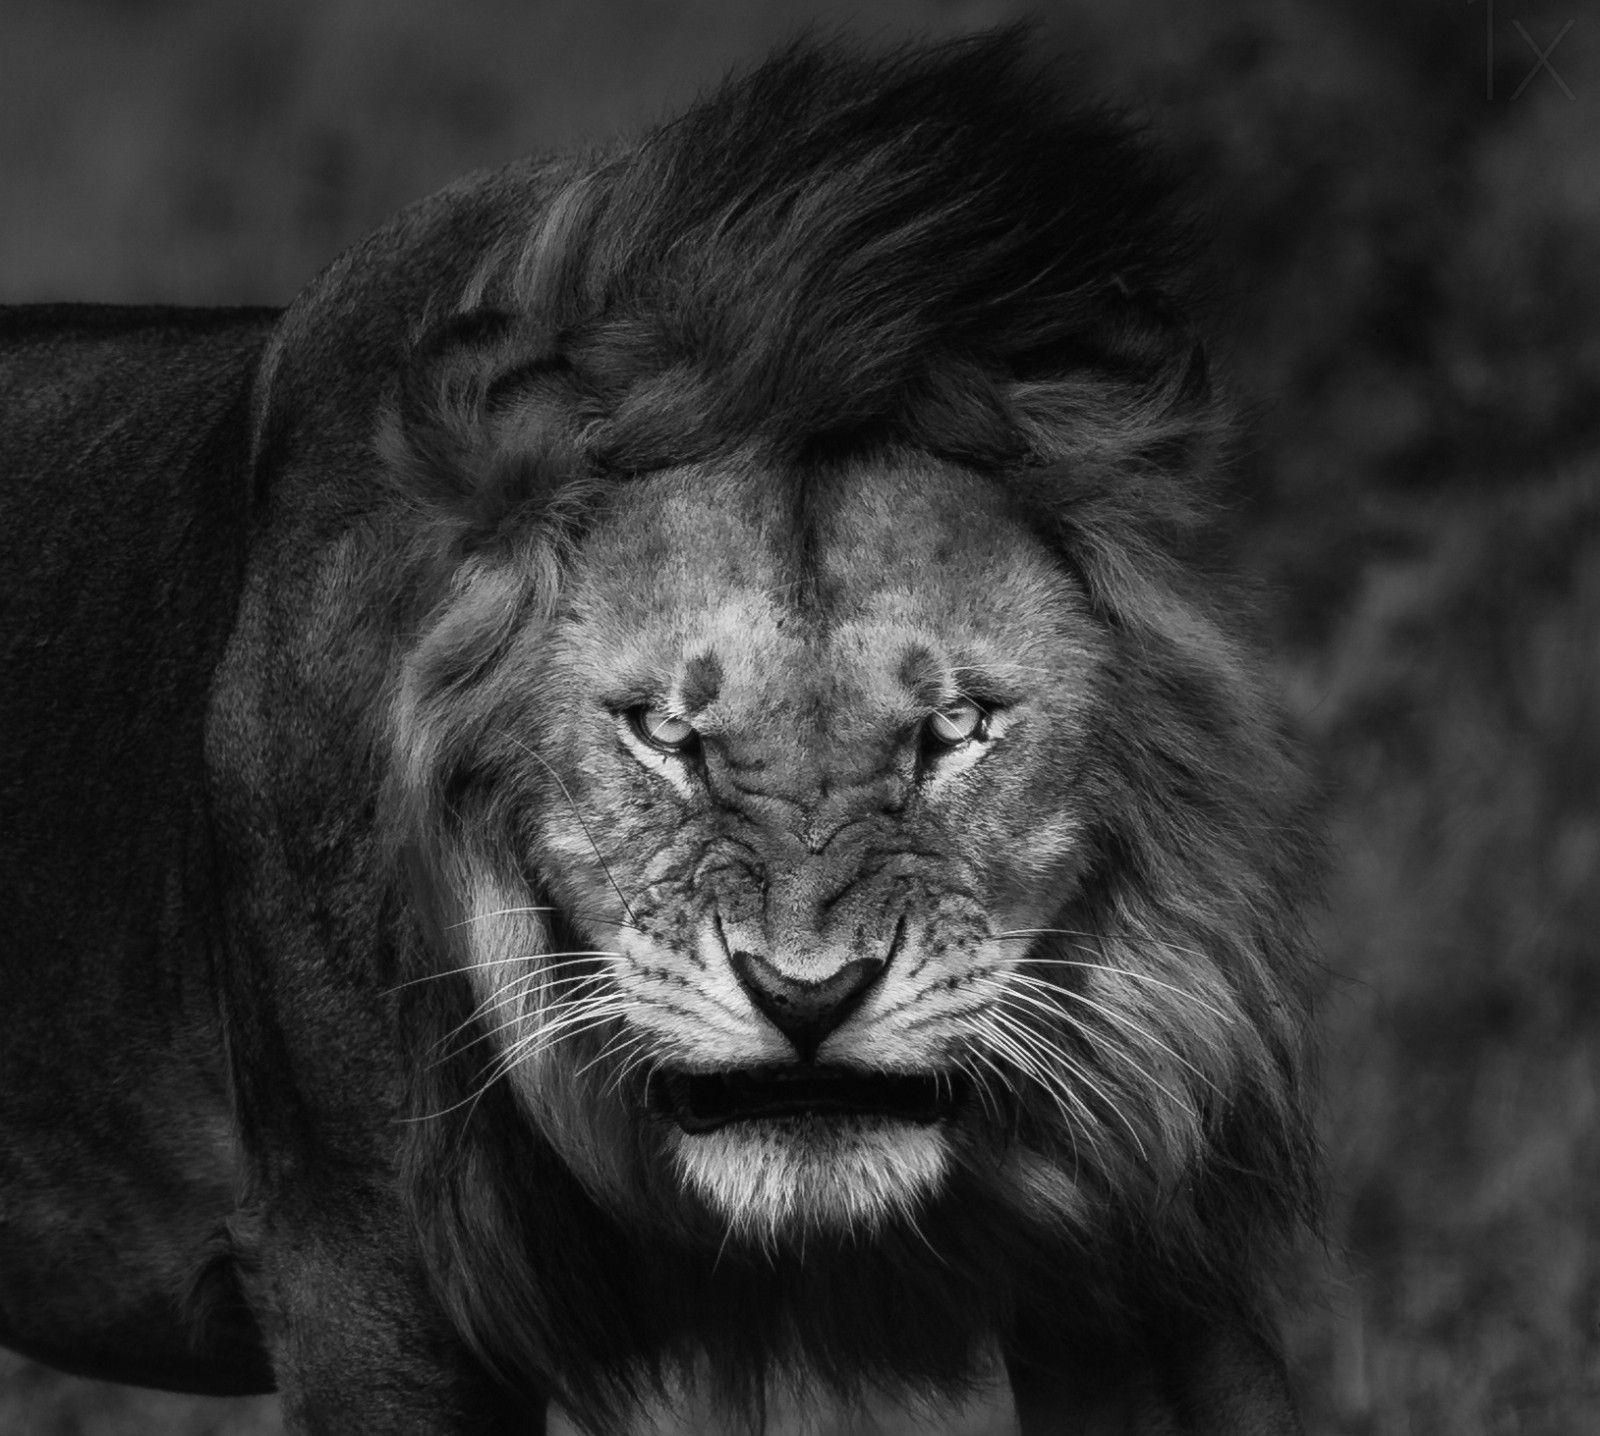  Lion  King 4K  Wallpapers  Top Free Lion  King 4K  